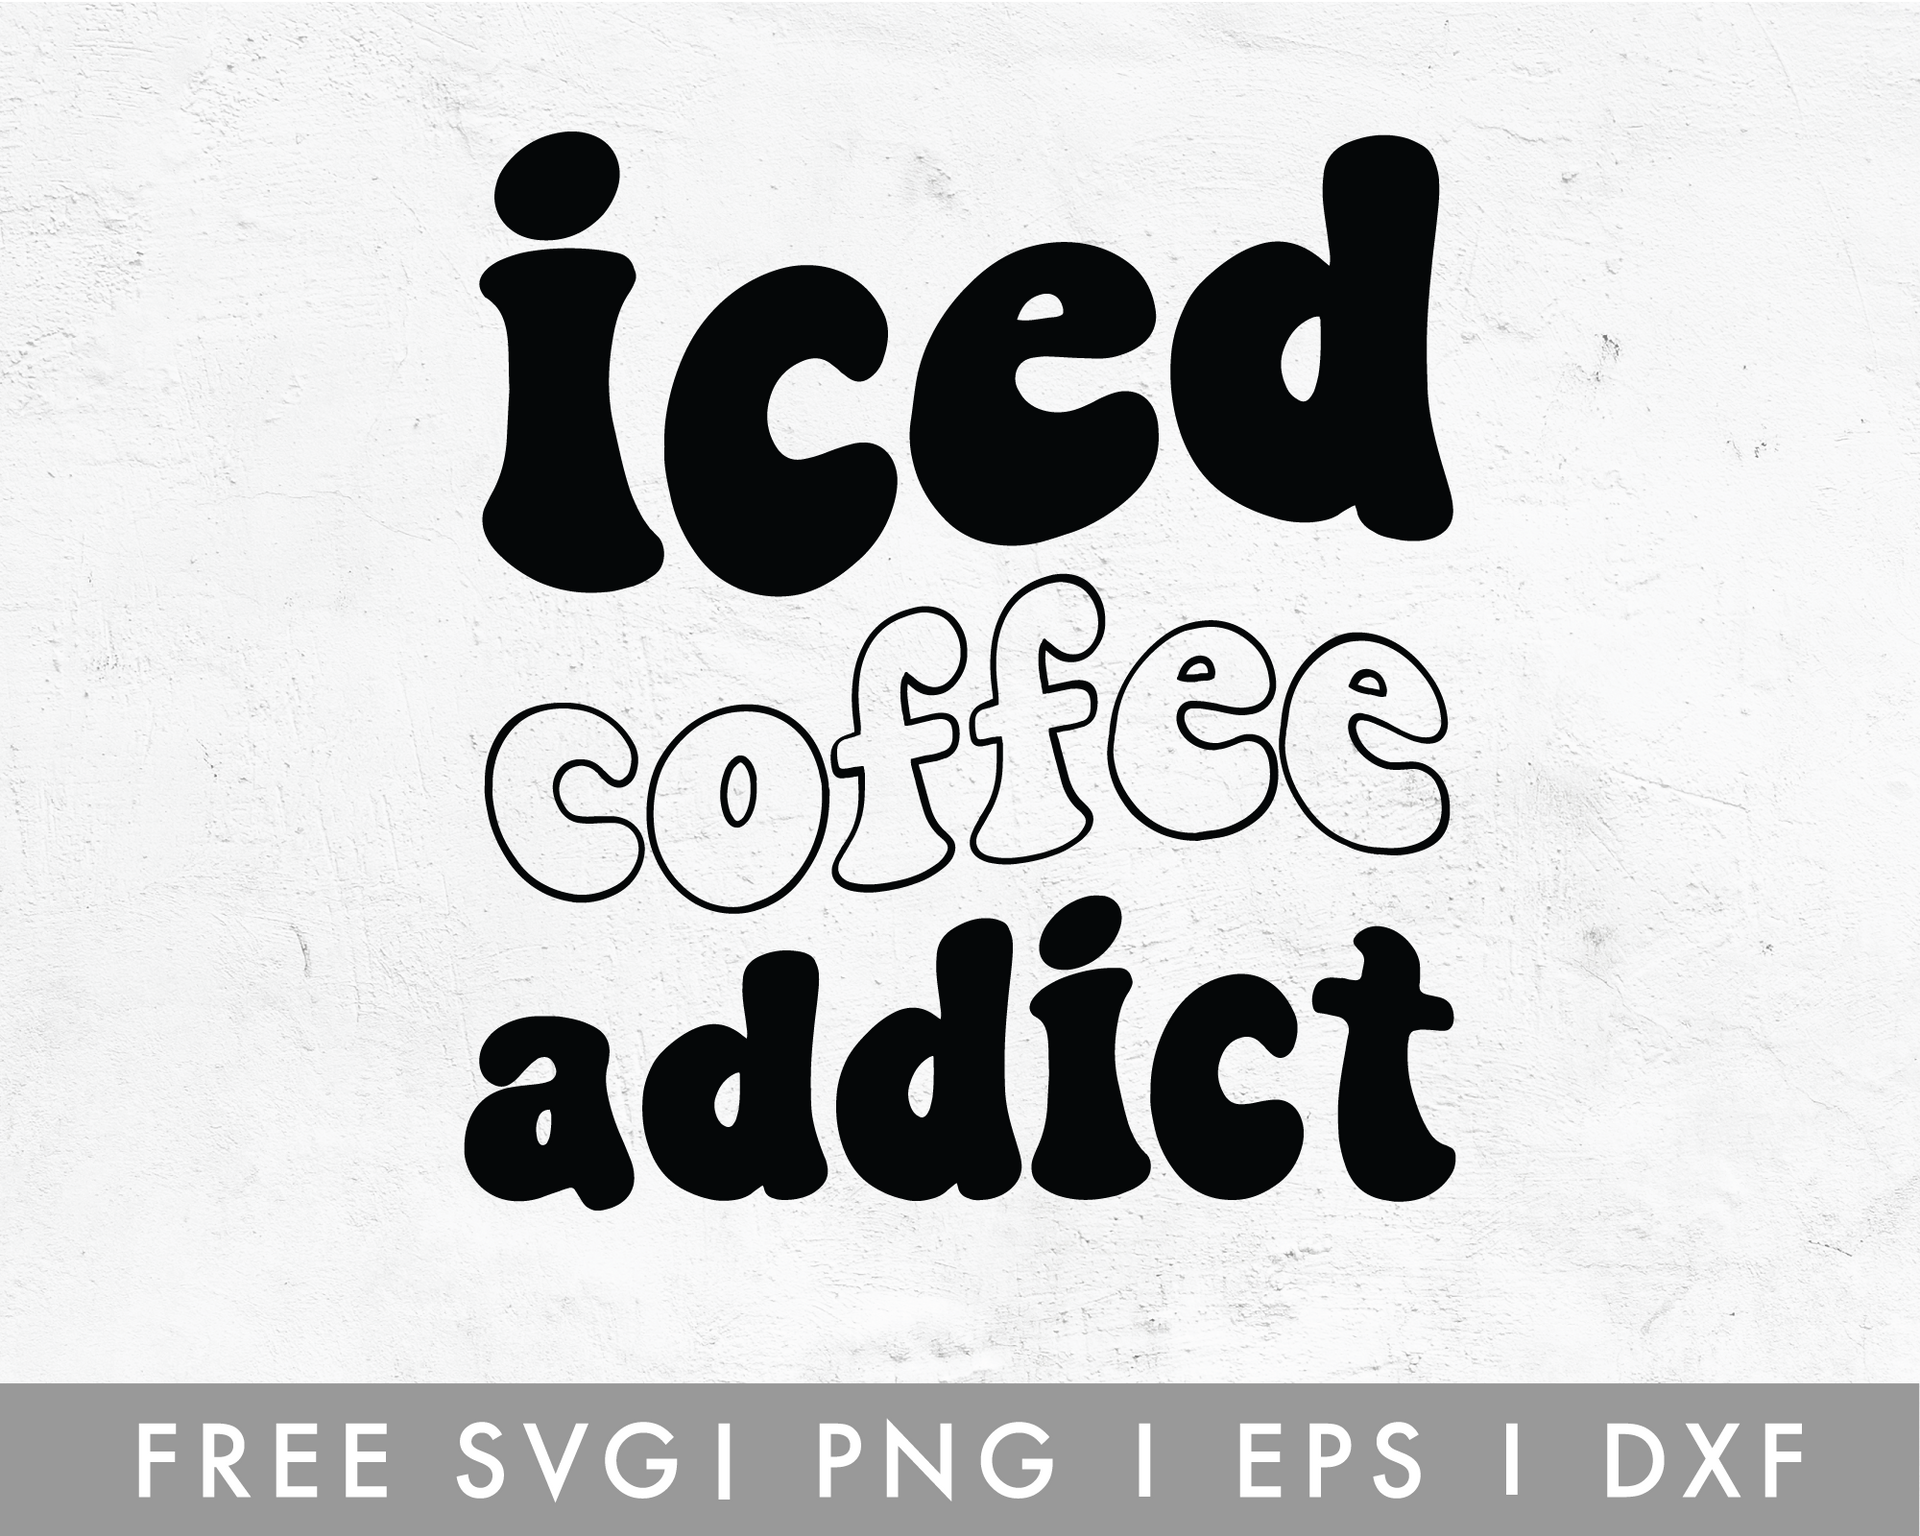 Free Photo  Iced coffee